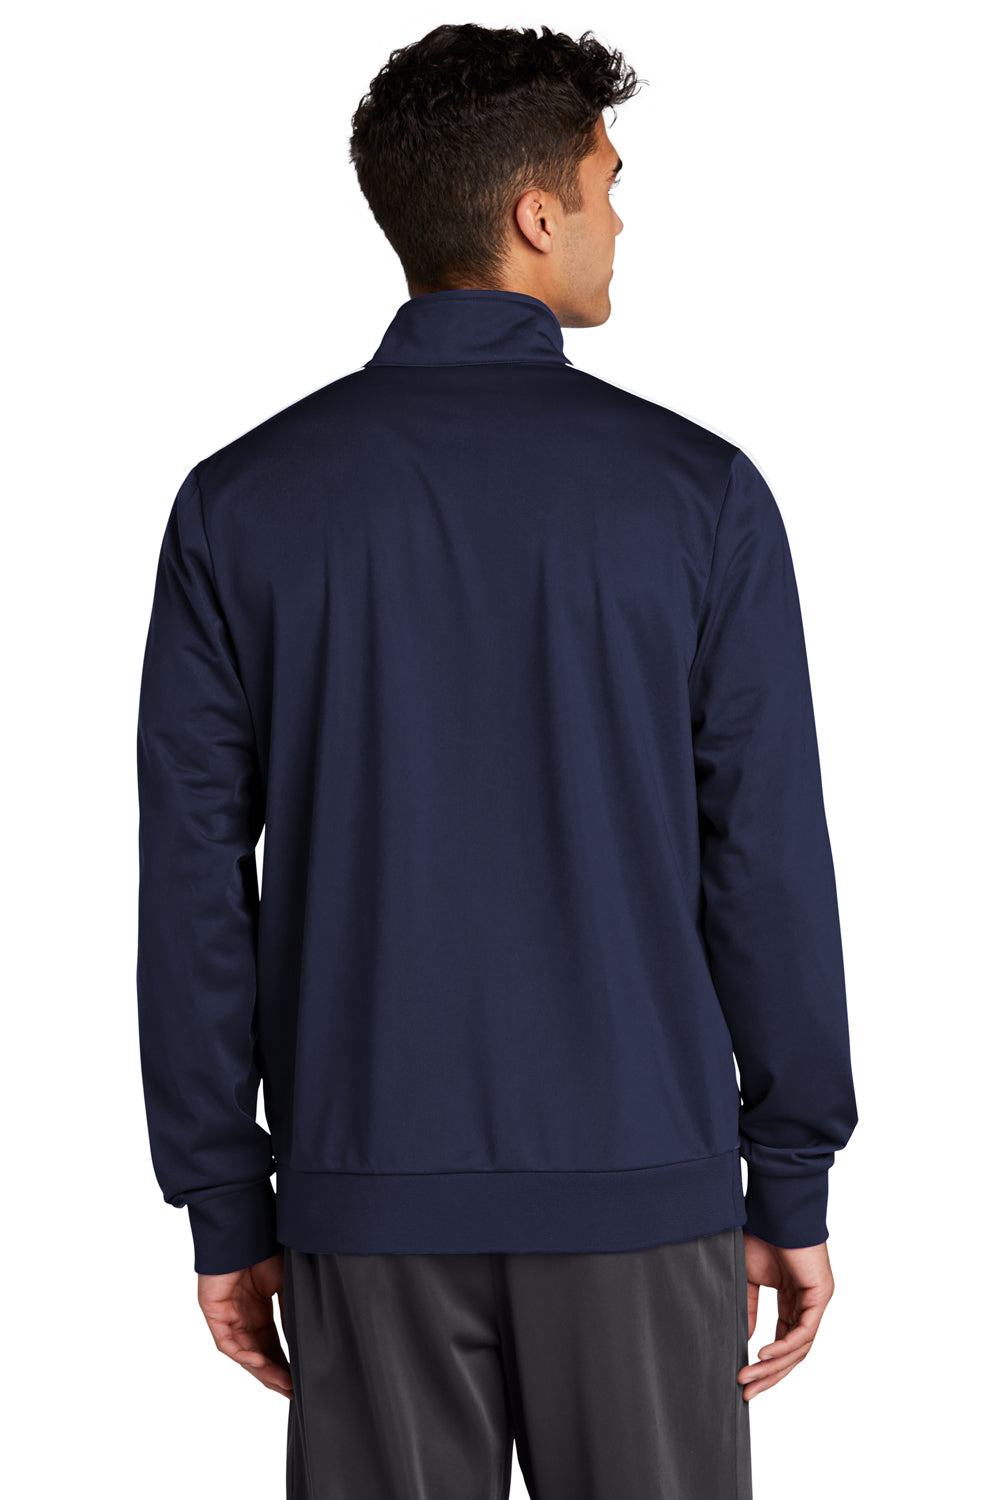 Sport-Tek Mens Full Zip Track Jacket True Navy Blue/White Side